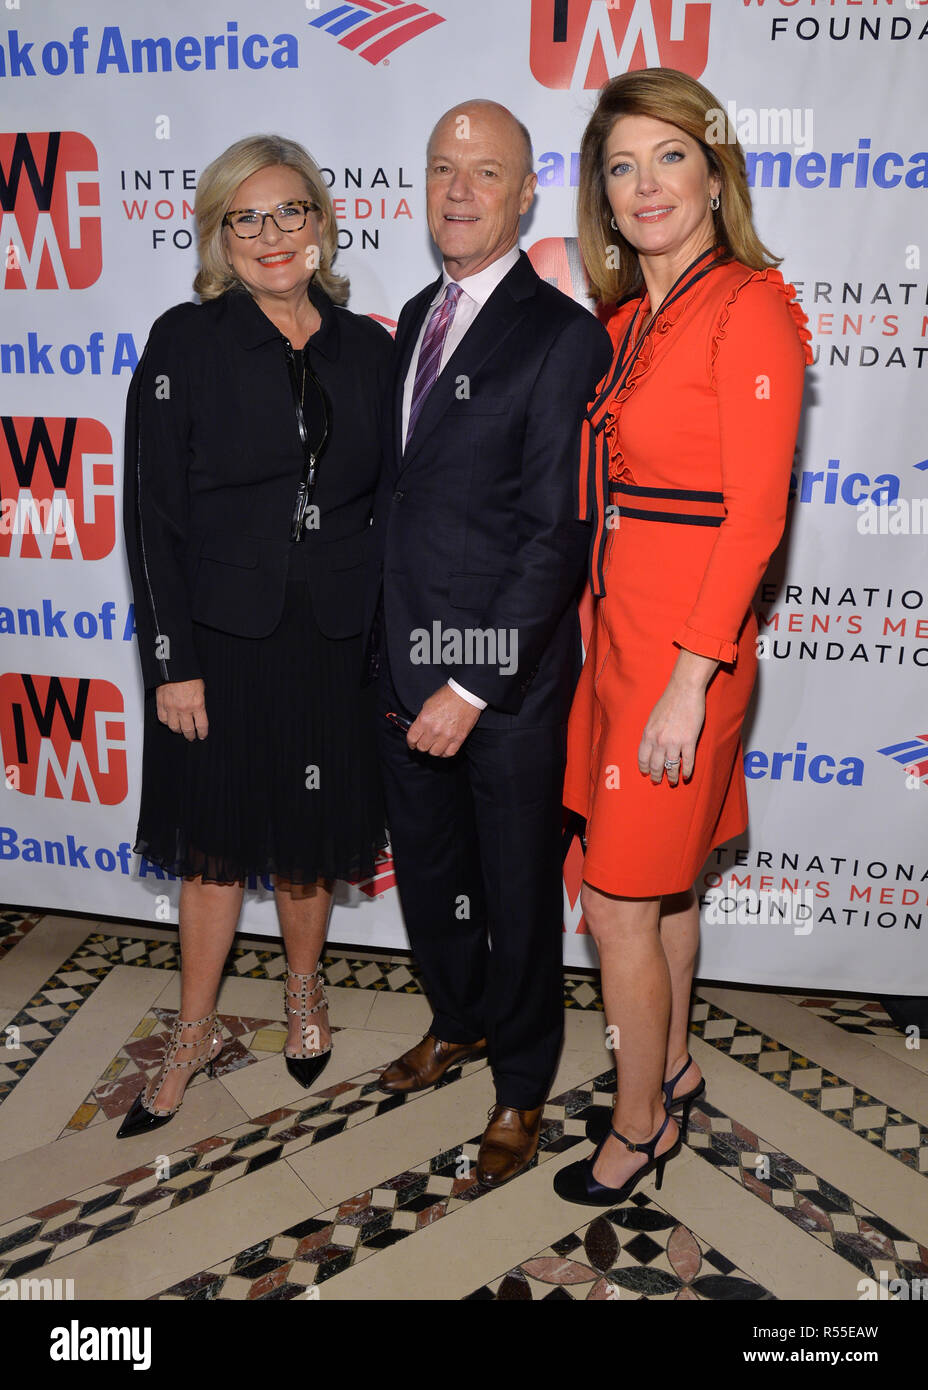 Cynthia McFadden, Phil Griffin e Norah O'Donnell frequentare il 2018 internazionale della donna Media Foundation il coraggio di giornalismo i premi a Cipriani 4 Foto Stock